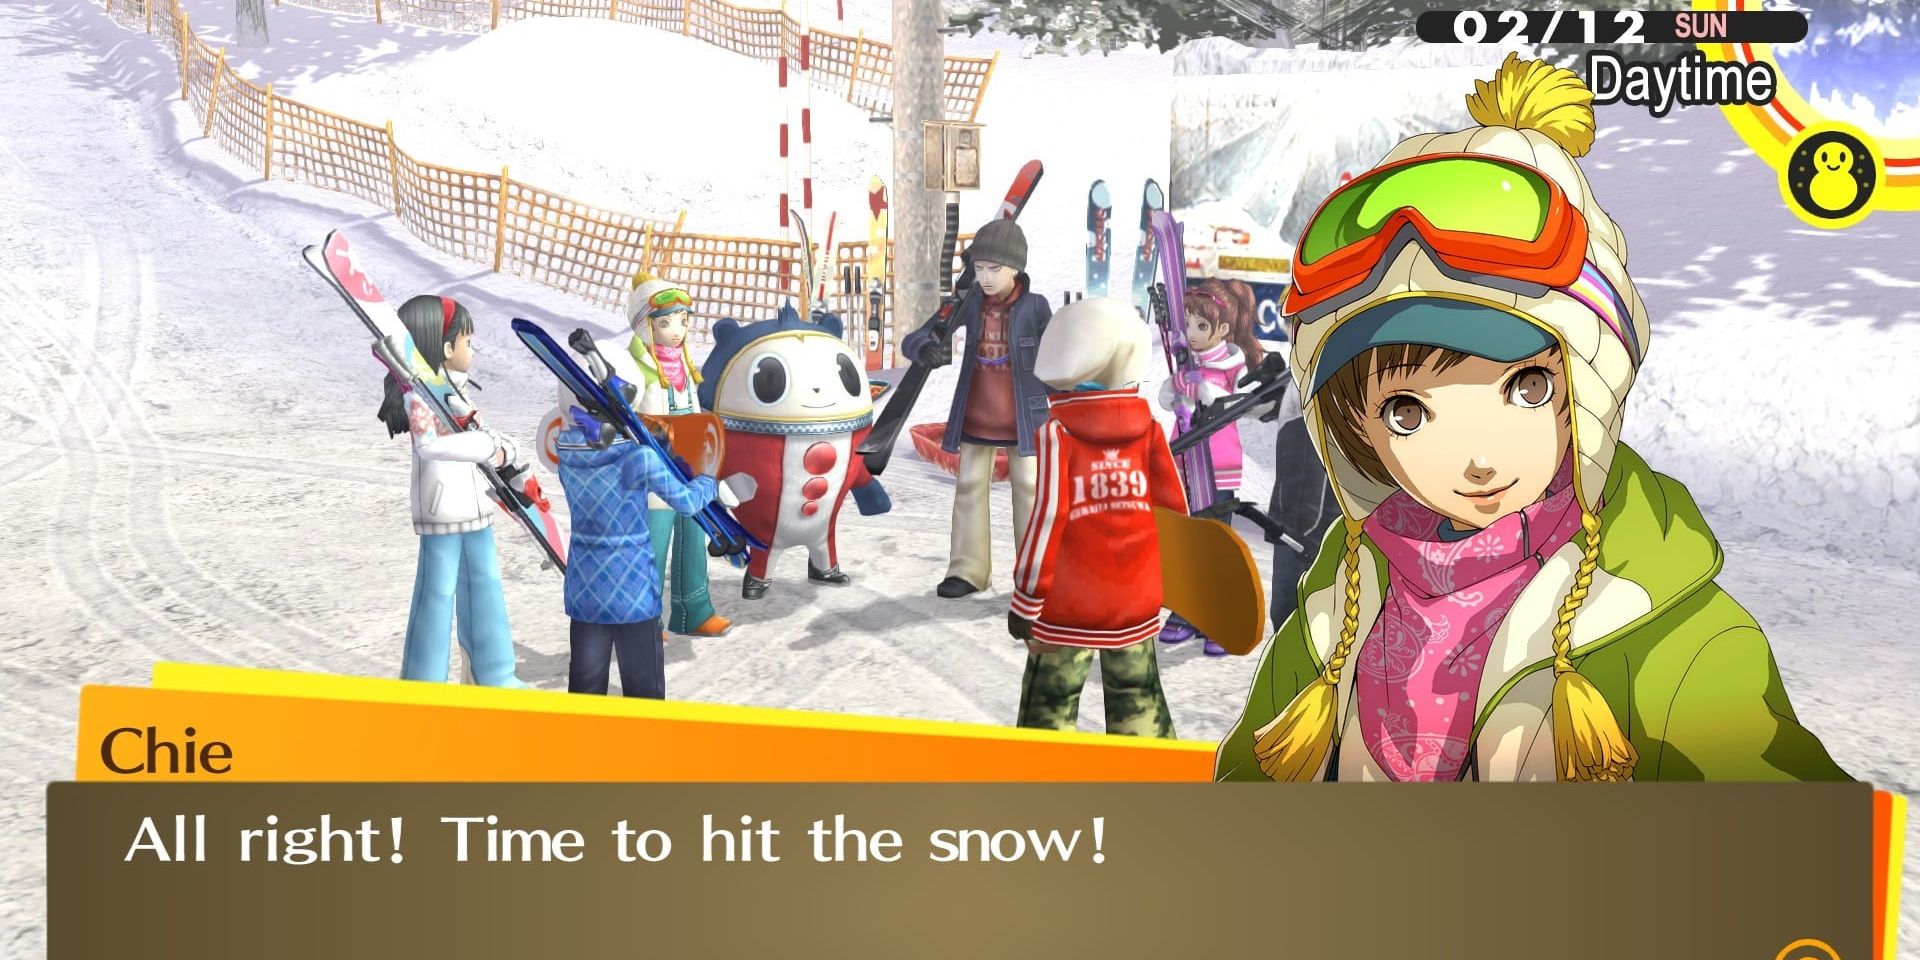 The Investigation Team prepare to ski in Persona 4 Golden